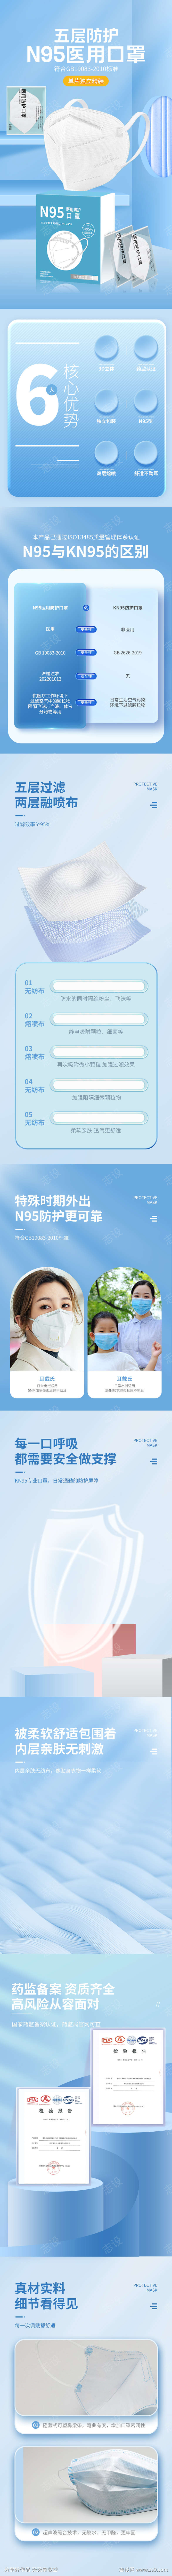 蓝色简约N95医用防护口罩详情页